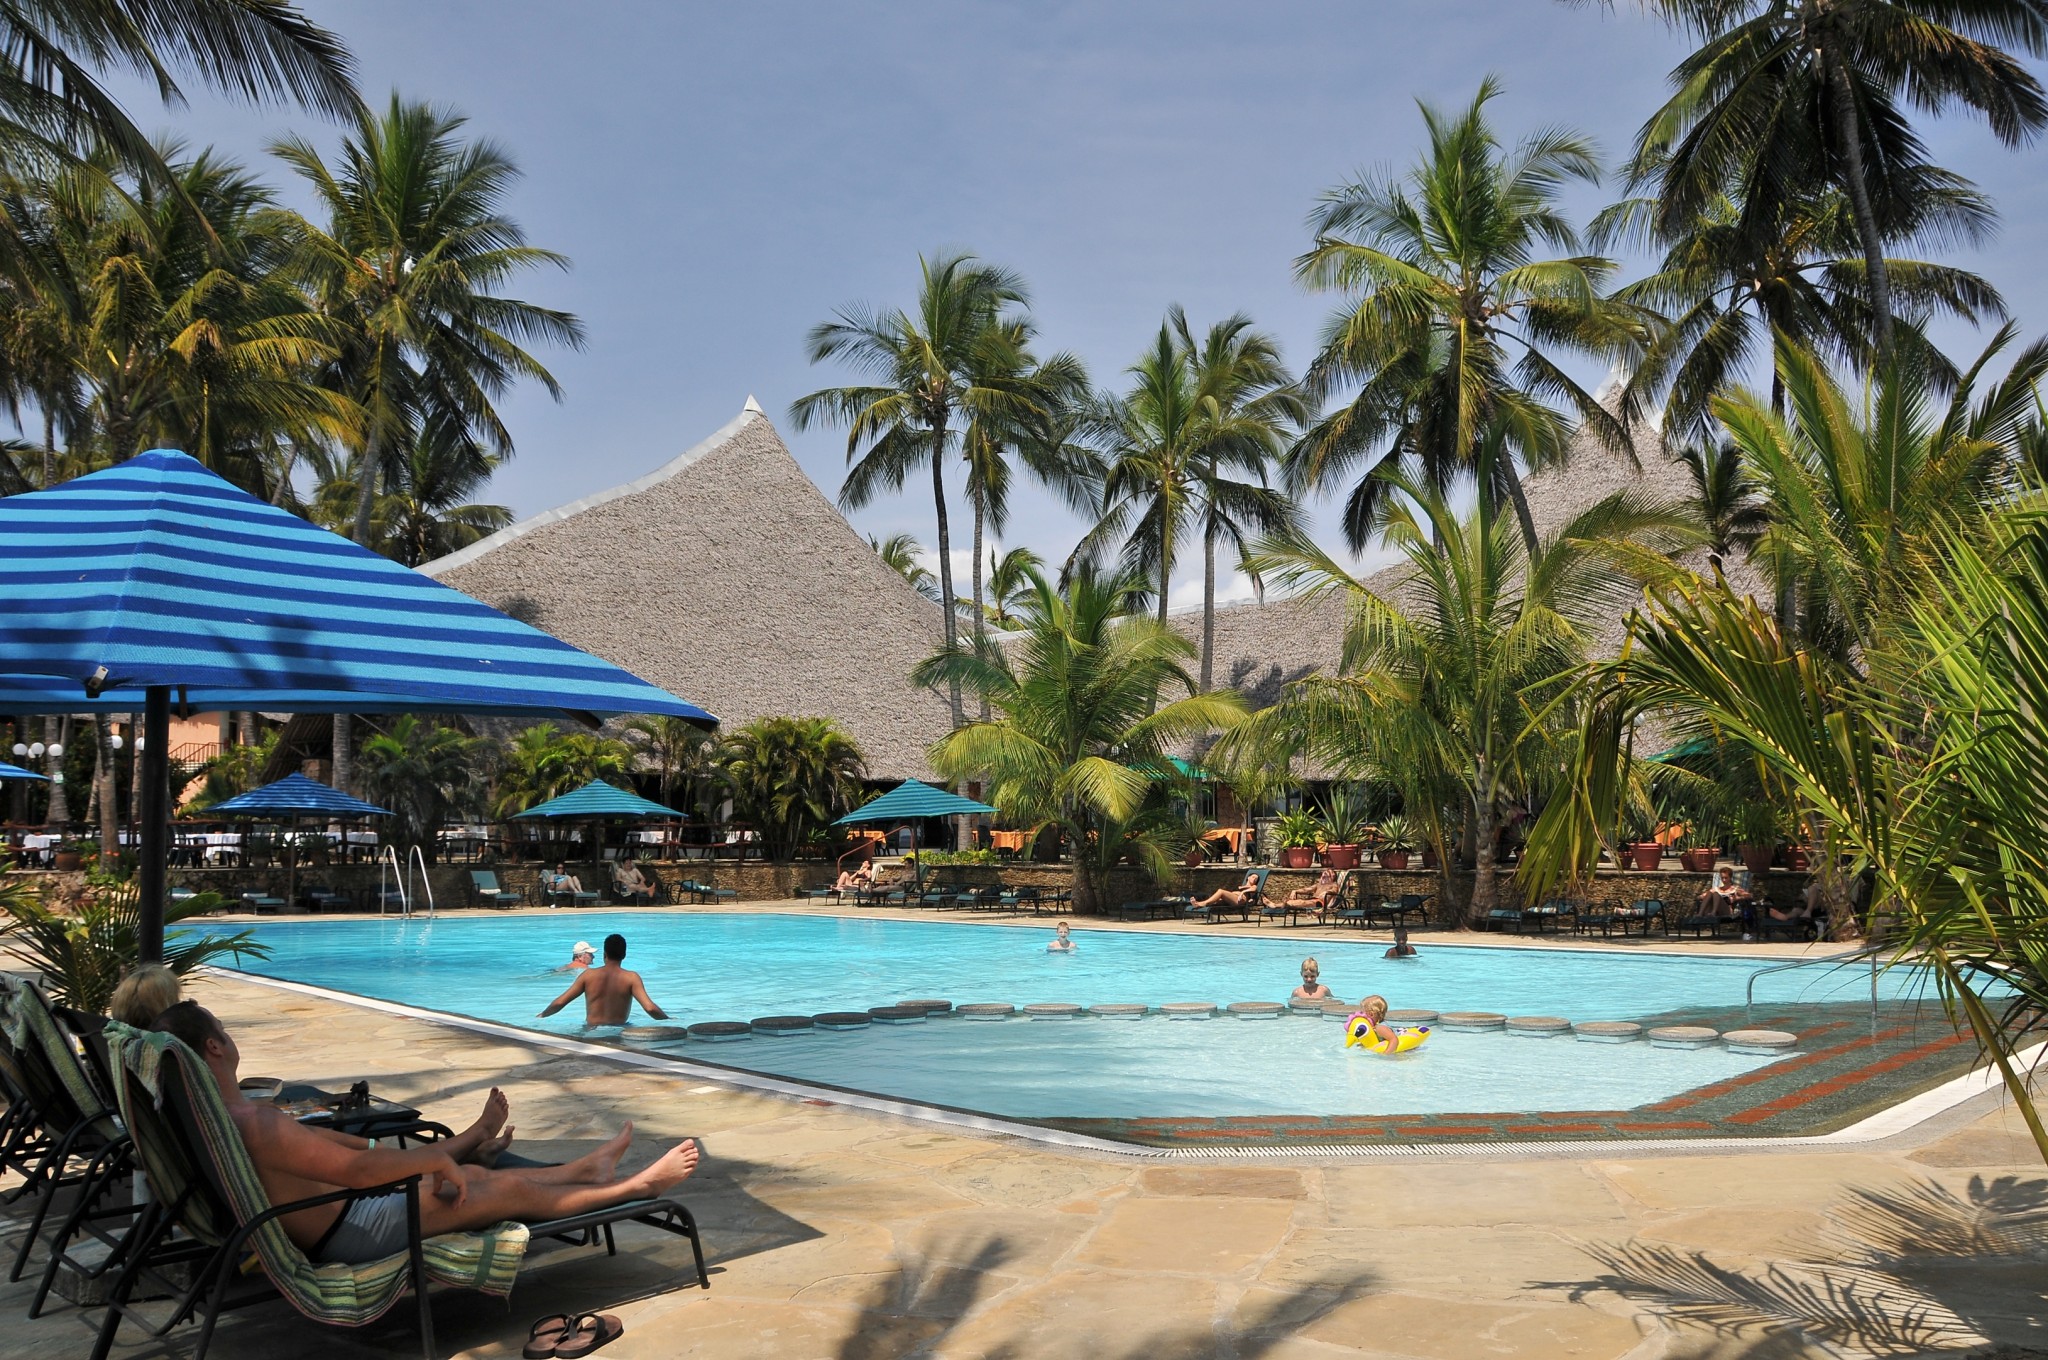 gepflegte Pool- und Gartenlandschaft im Partnerhotel Bahari Beach